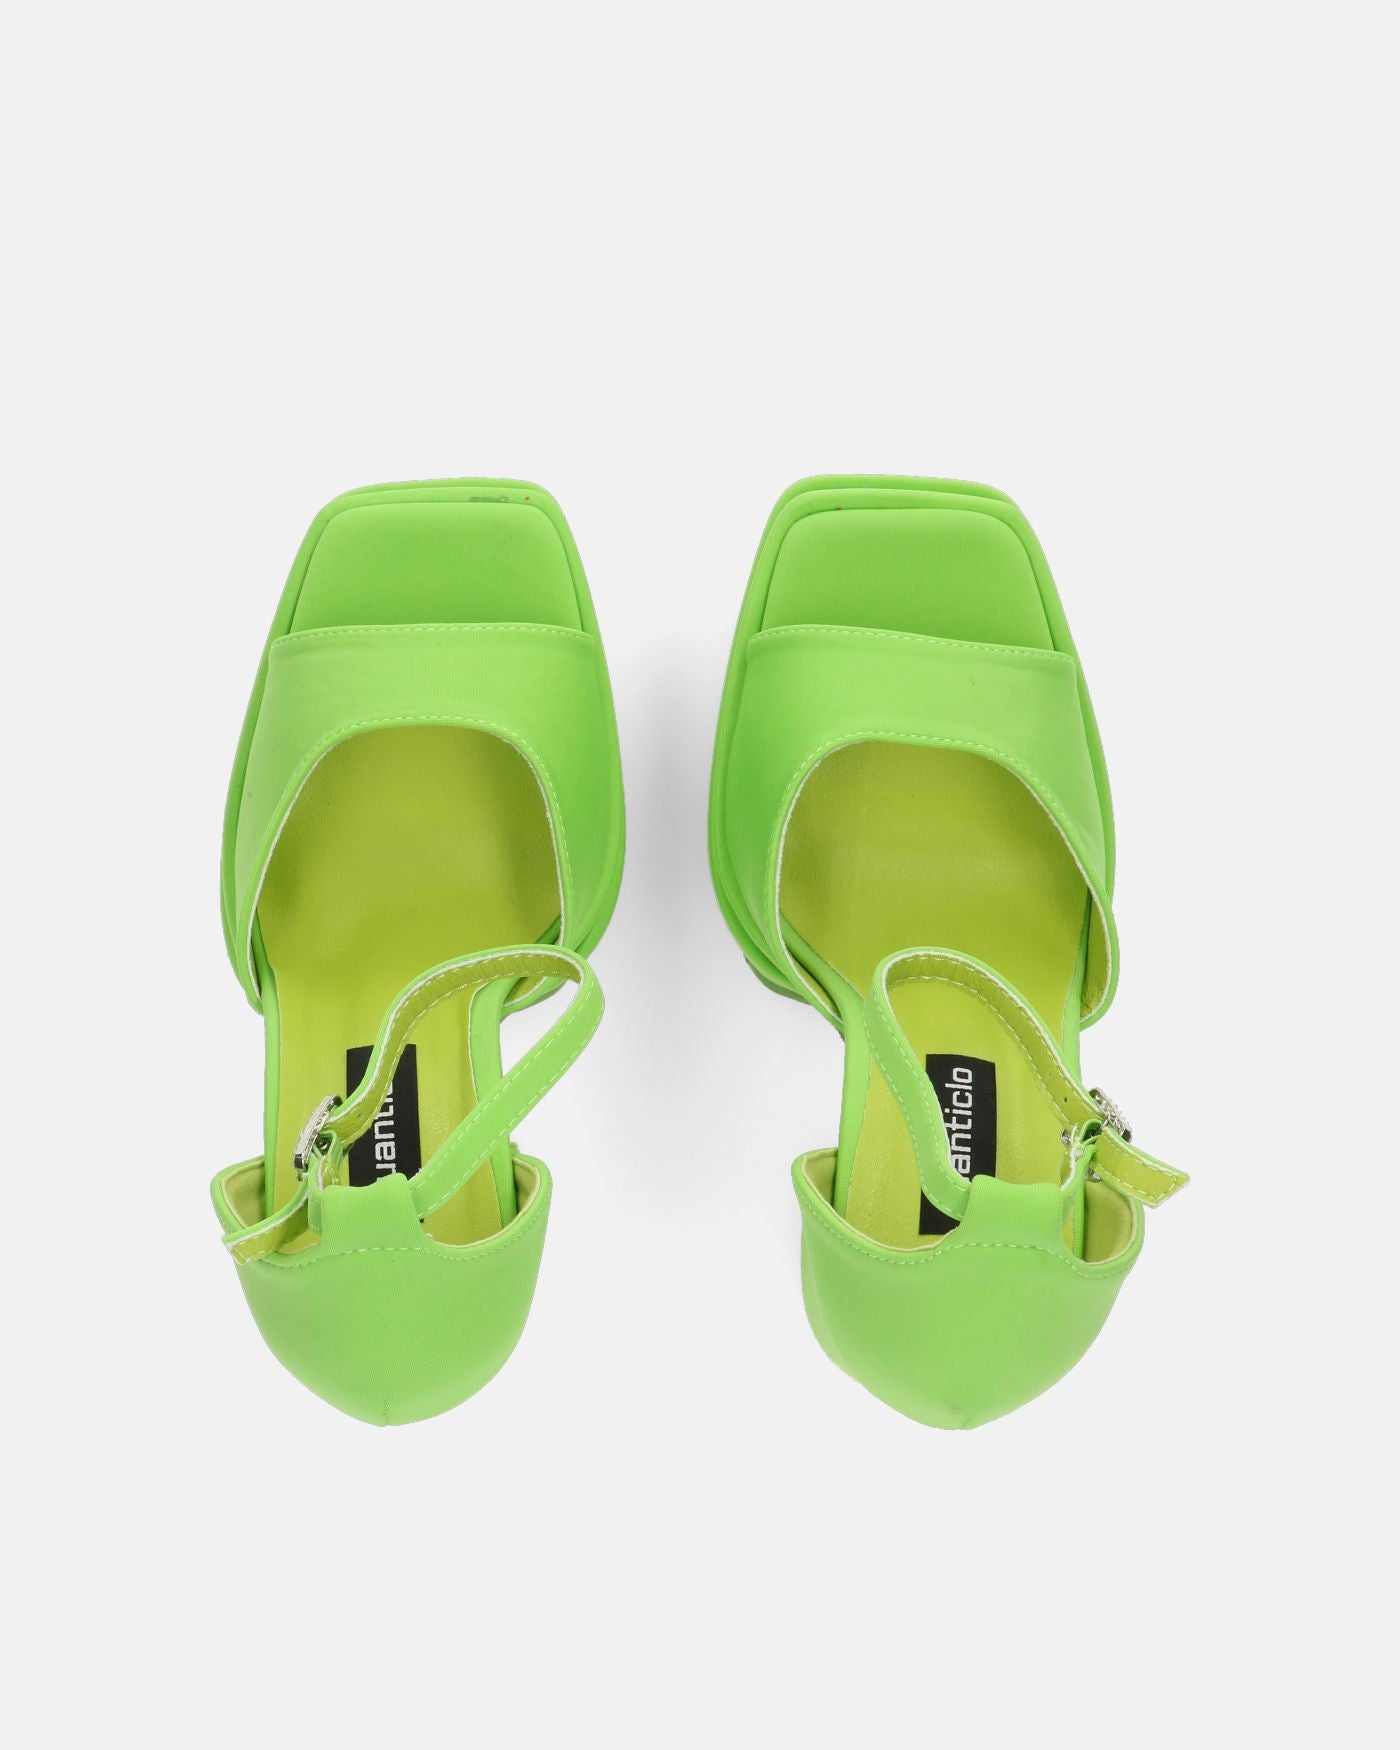 AVA - sandalias de tacón alto en lycra verde y pedrería en la tira